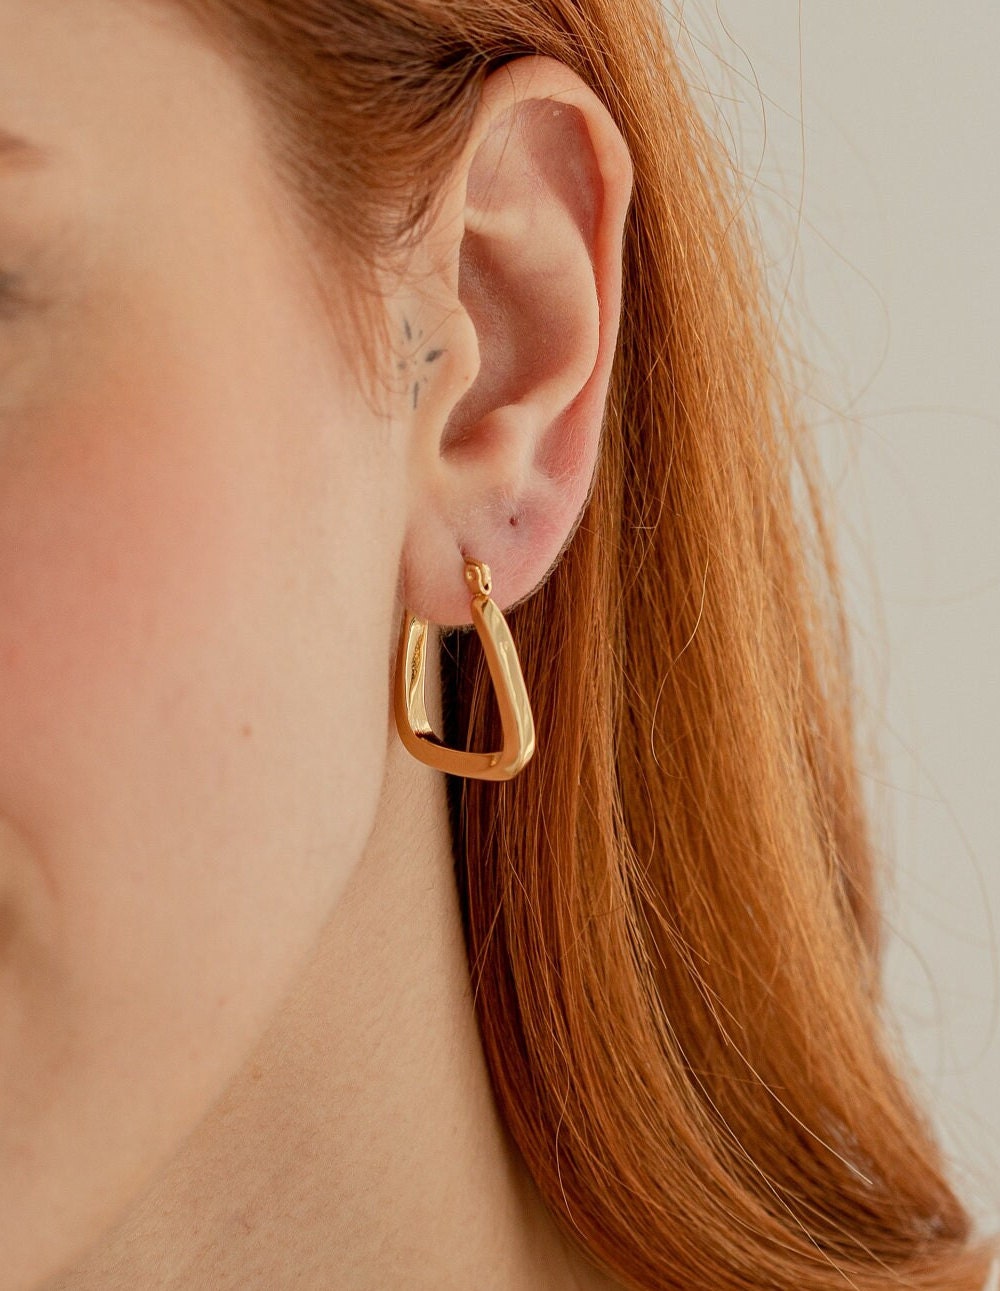 Square Hoop Earrings, 18K Gold, Minimalist Simple Earrings, Geometric Earrings, Gift For Mom, Unique Jewelry, Modern Earrings For Women